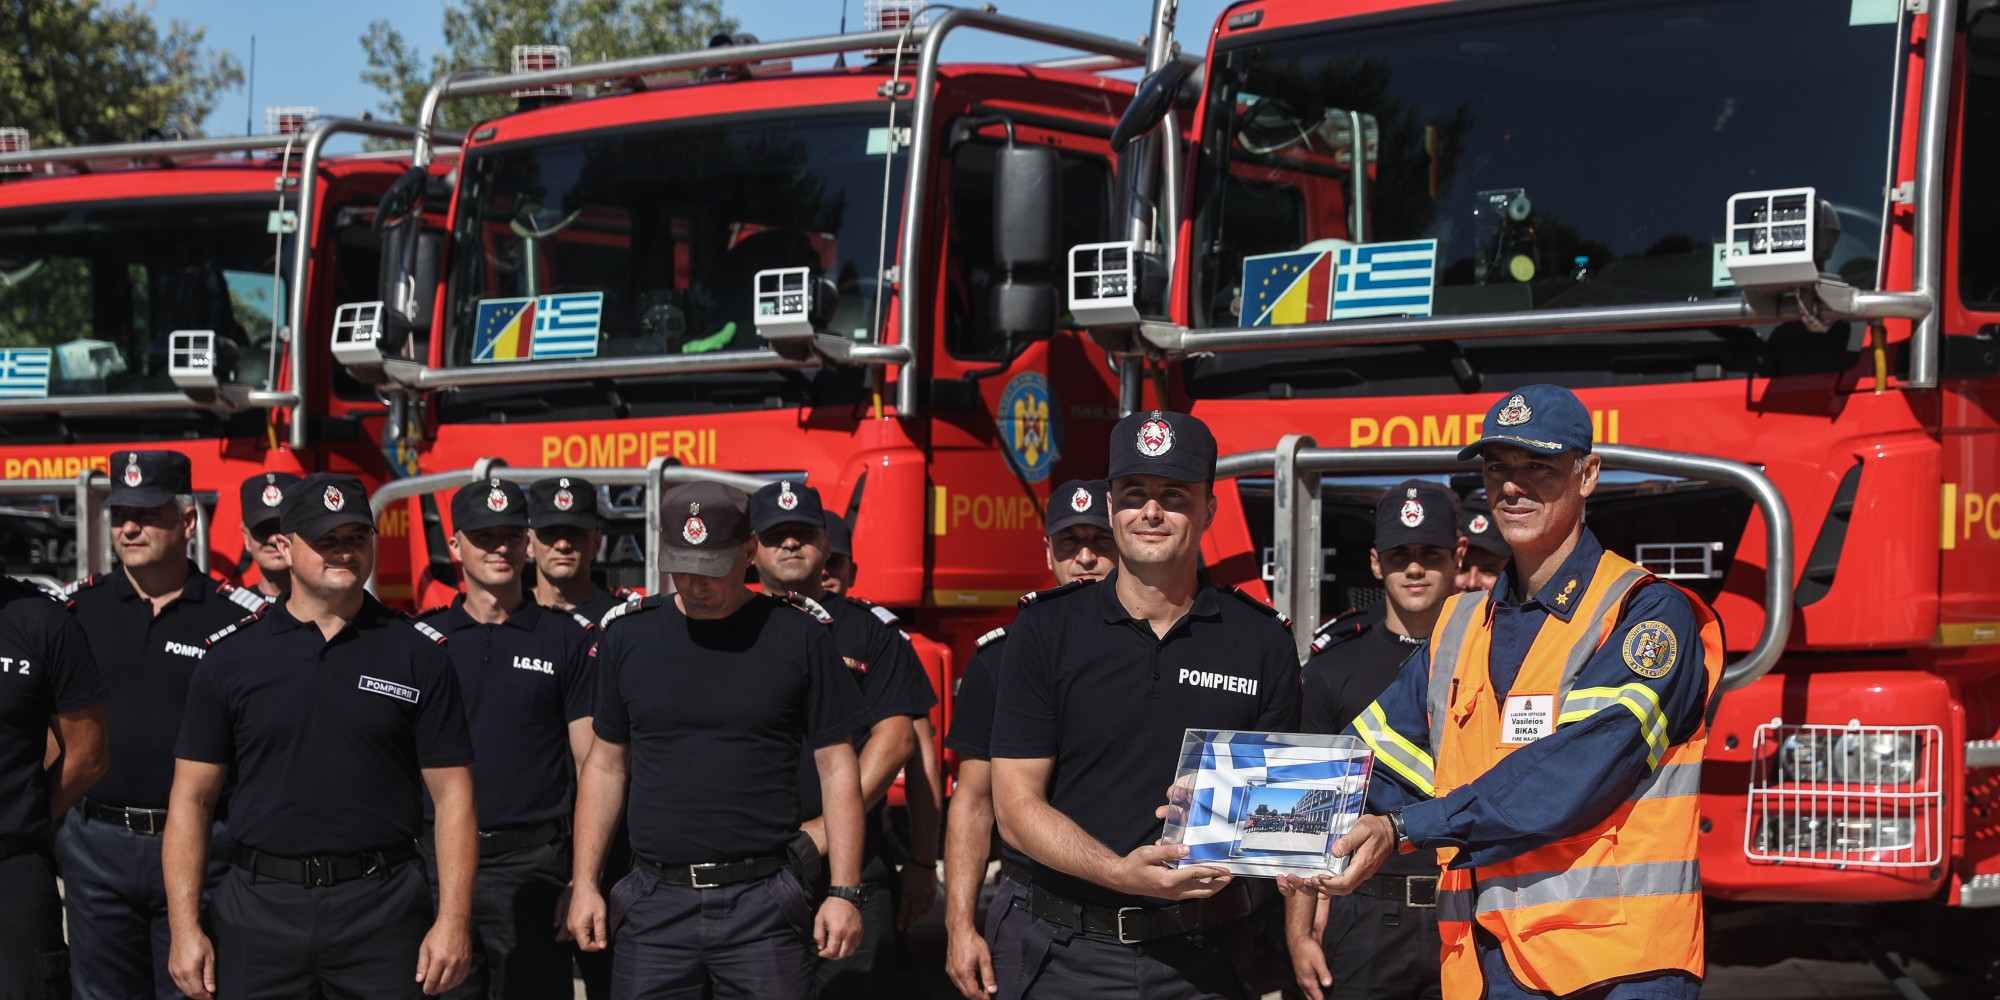 Τελετή αναχώρησης Ρουμάνων Πυροσβεστών από την Ελλάδα, στις εγκαταστάσεις της Πυροσβεστικής Ακαδημίας